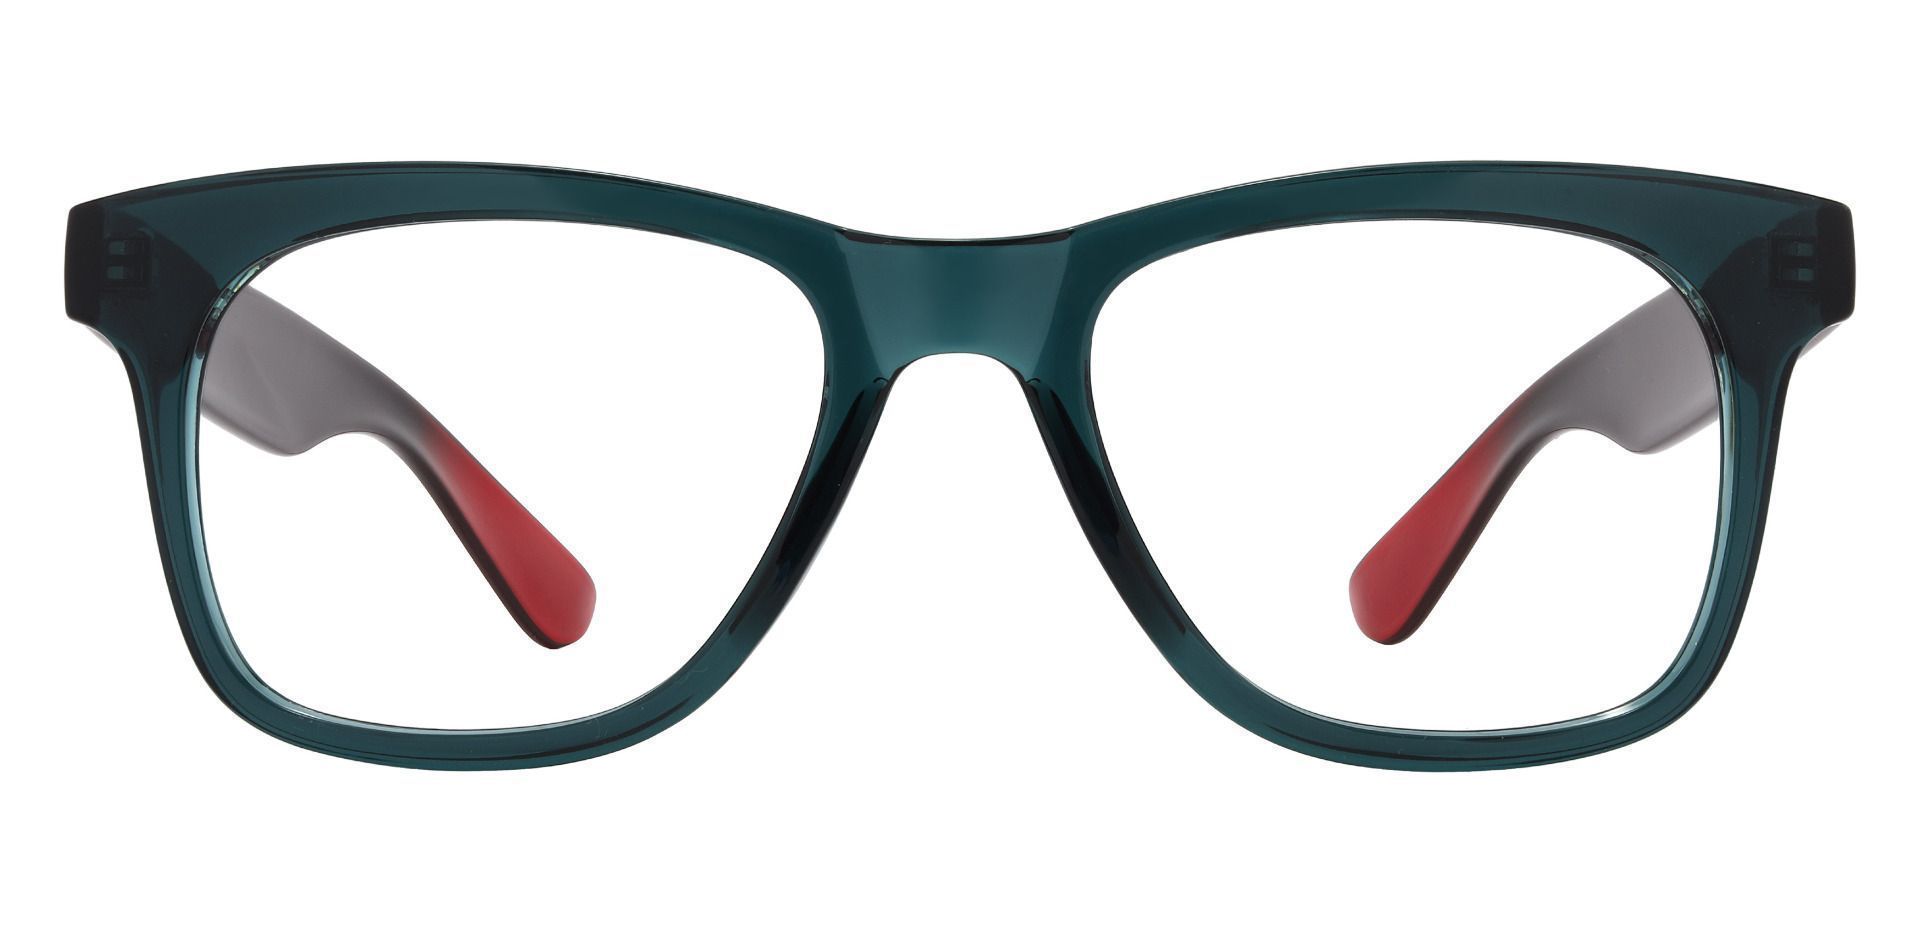 Hurley Square Eyeglasses Frame - Green